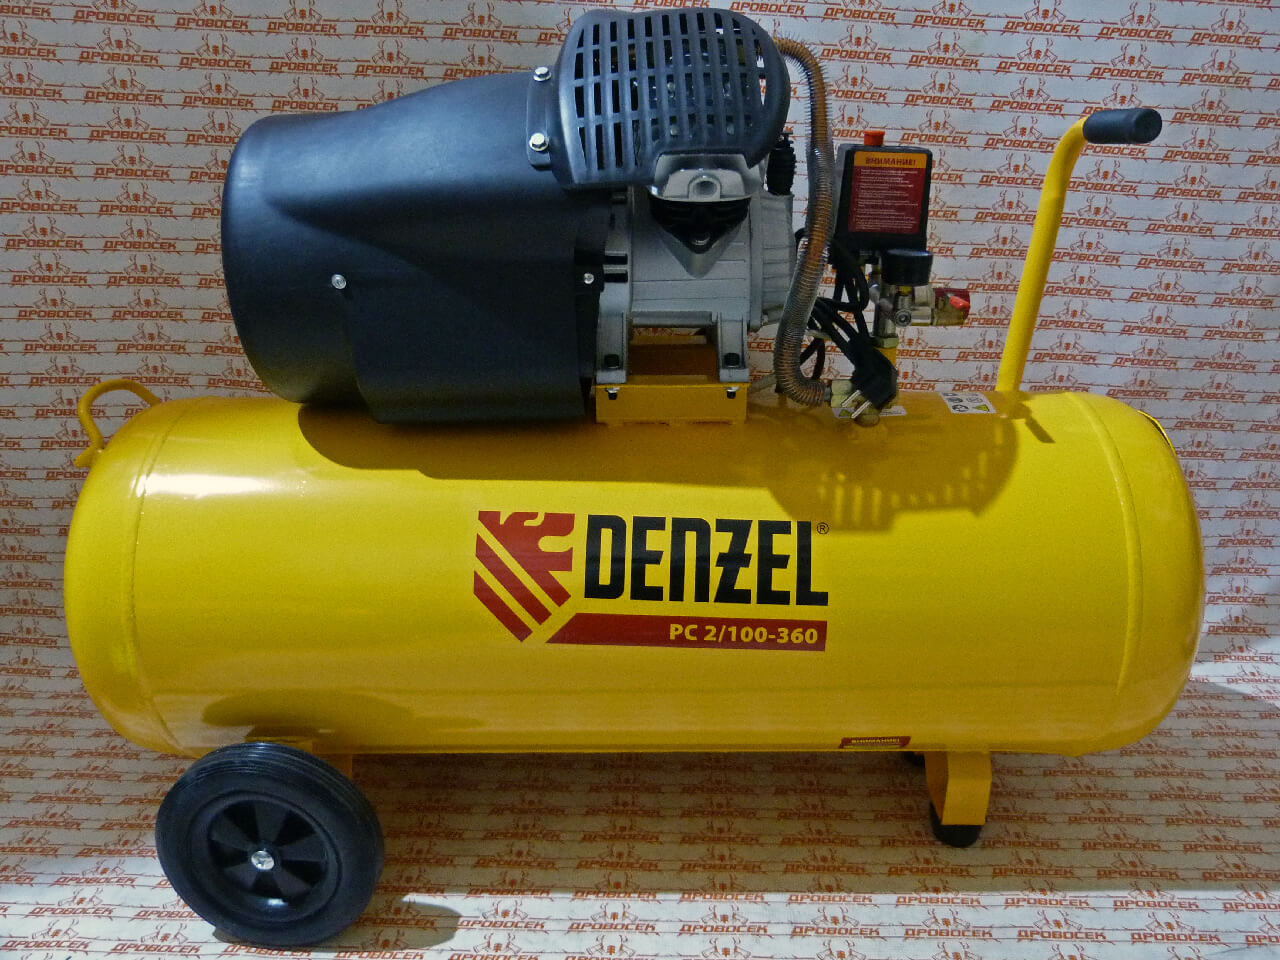 Воздушные компрессоры denzel купить. Компрессор воздушный 2,3квт 360л/мин 100л 10бар/58078 Denzel РС 2/100-360. Компрессор Denzel 360 л/мин 100л. Компрессор Дензел PC 2/100-360. Компрессор Denzel 100 литров.